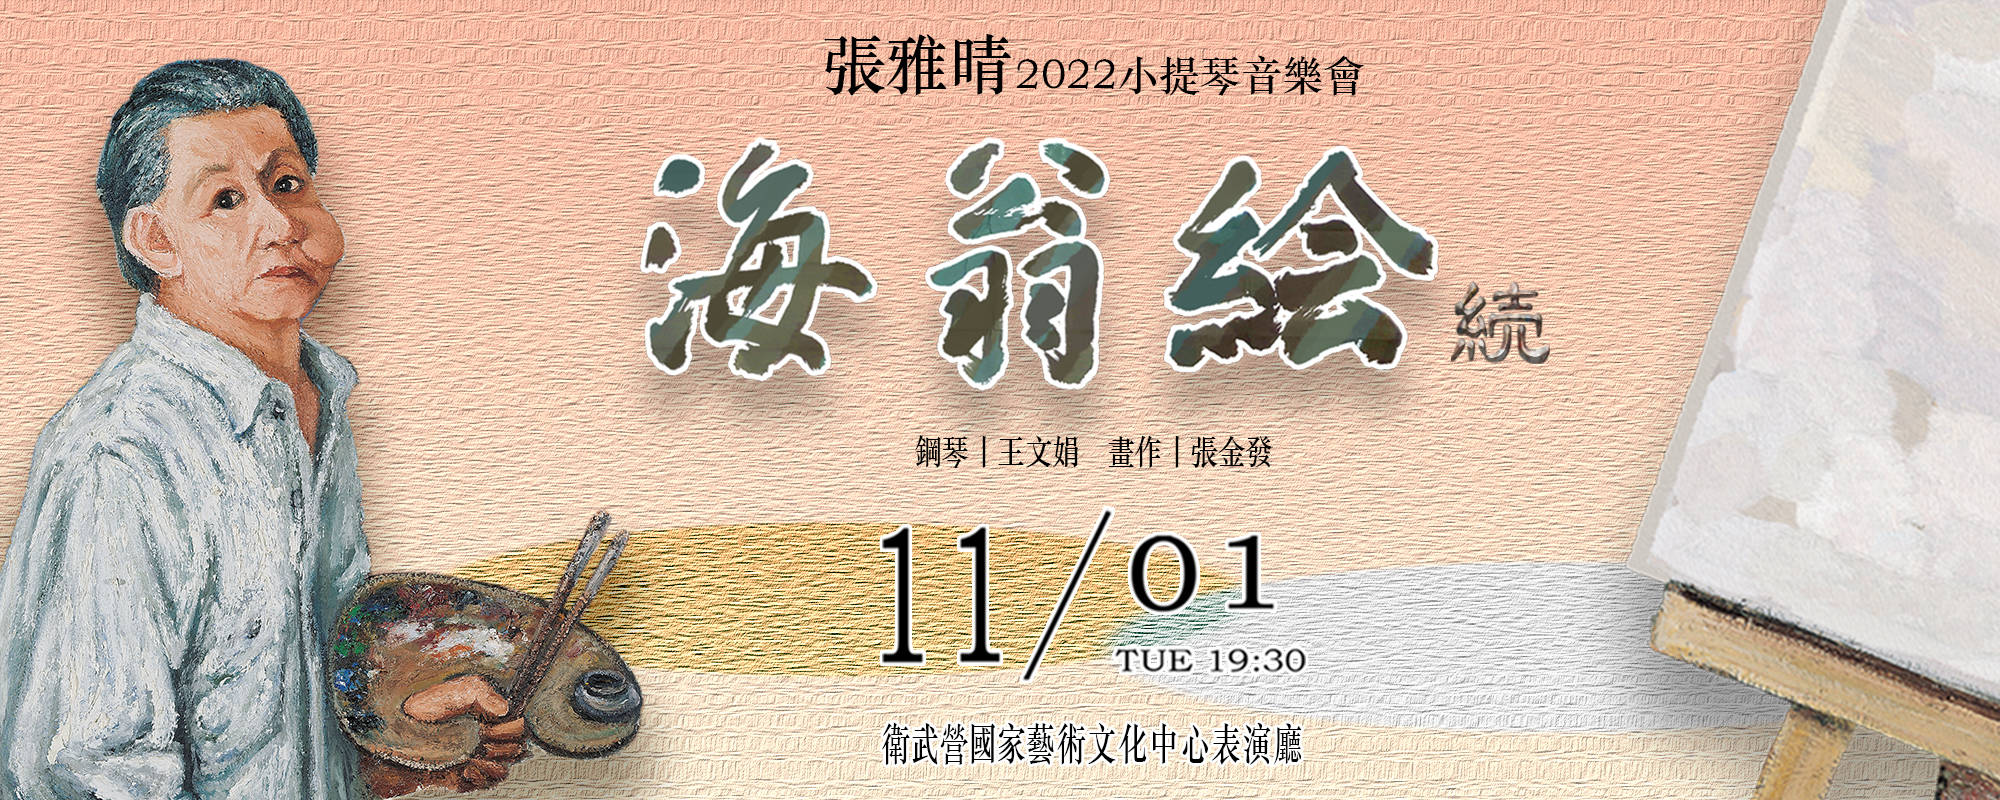 CHANG Ya-ching 2022 violin concert - The Hai-ang Paint II